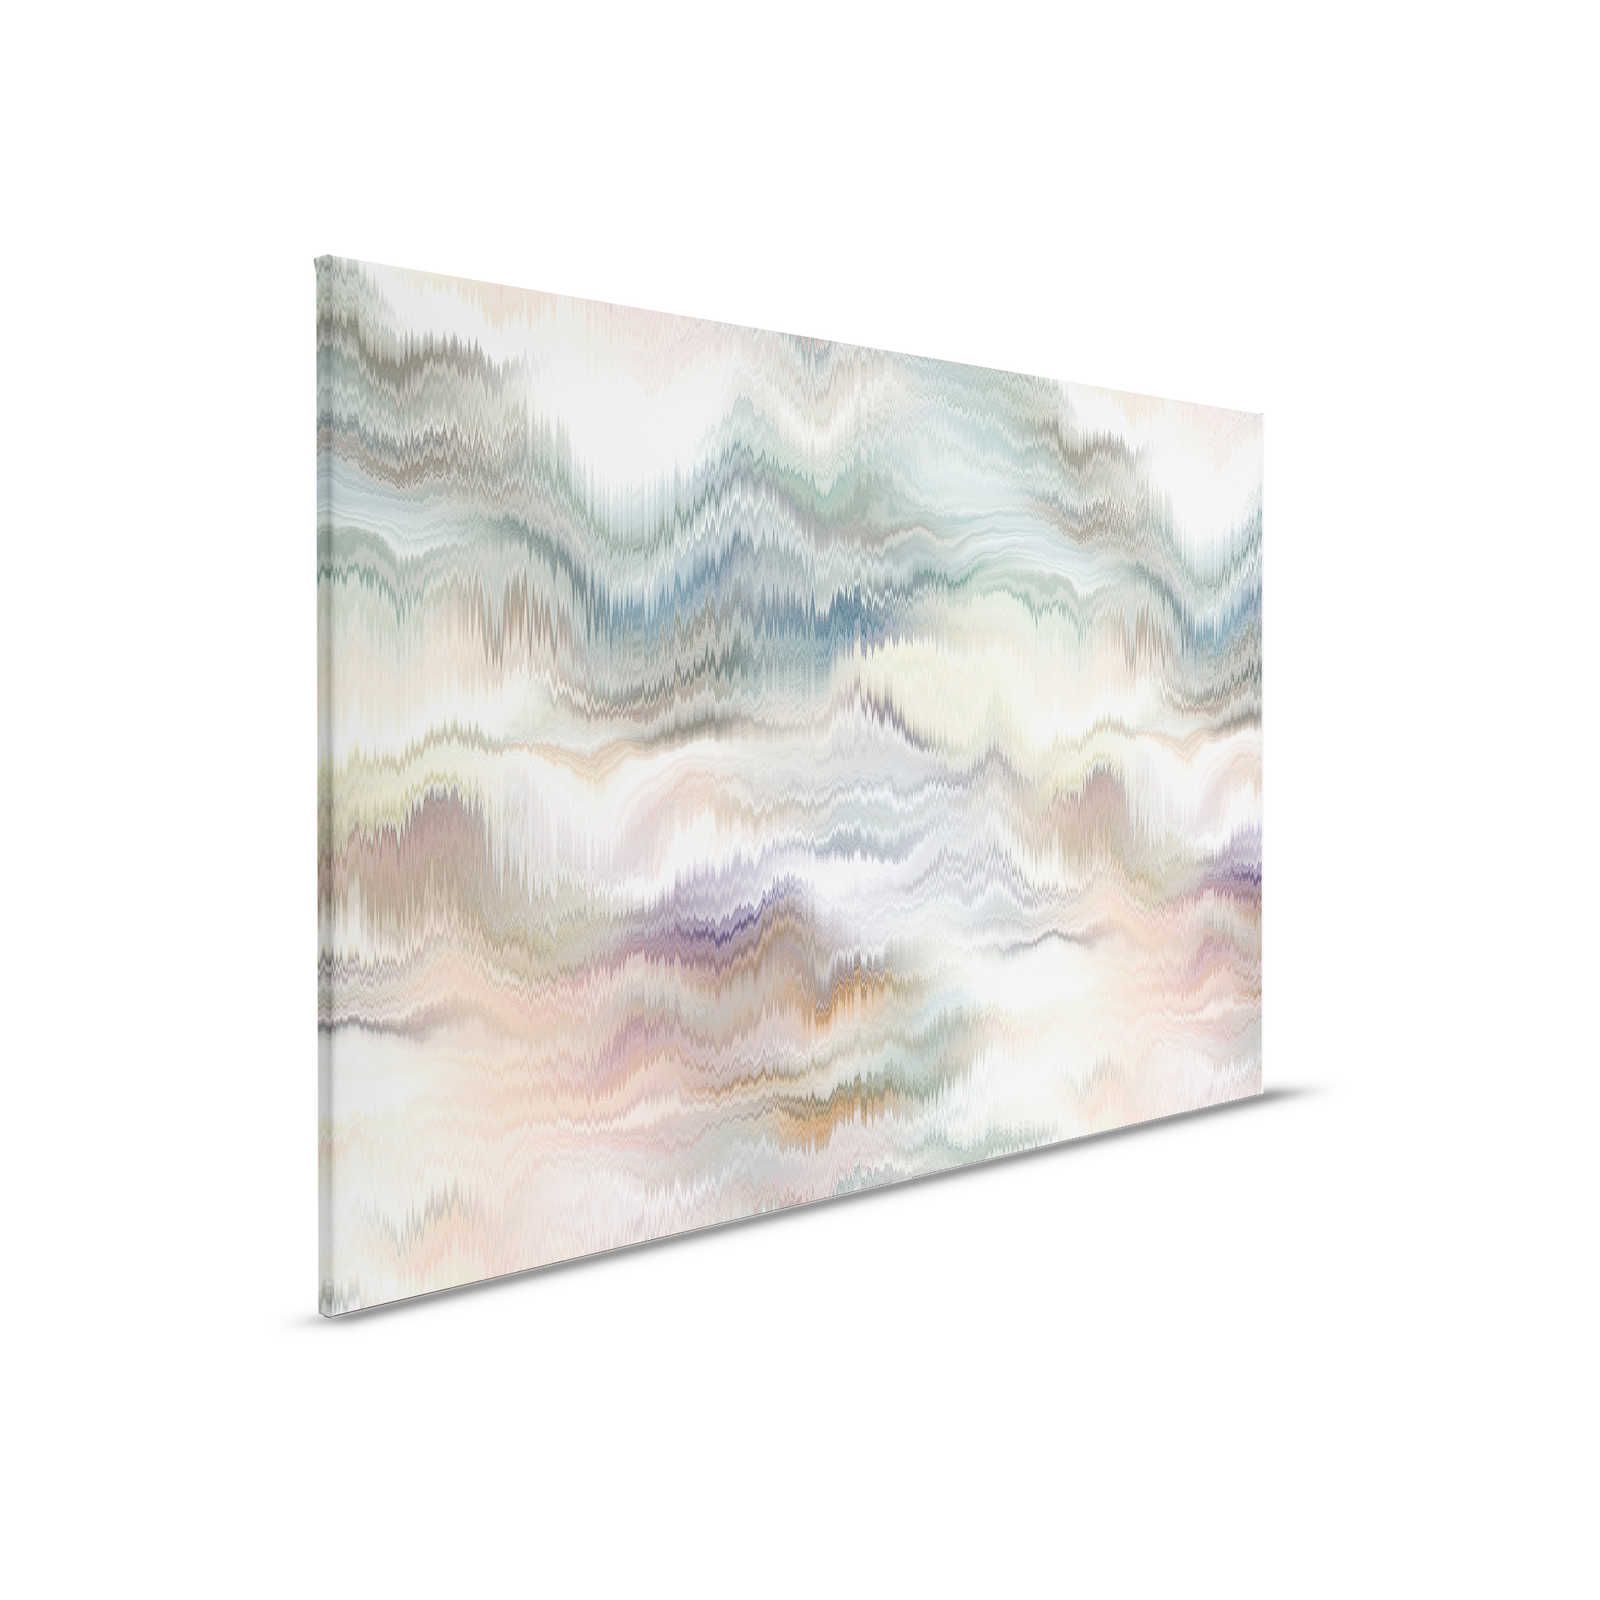         Pastel Palace 2 - Bunte Leinwandbild Pastell Farben & abstraktes Muster – 0,90 m x 0,60 m
    